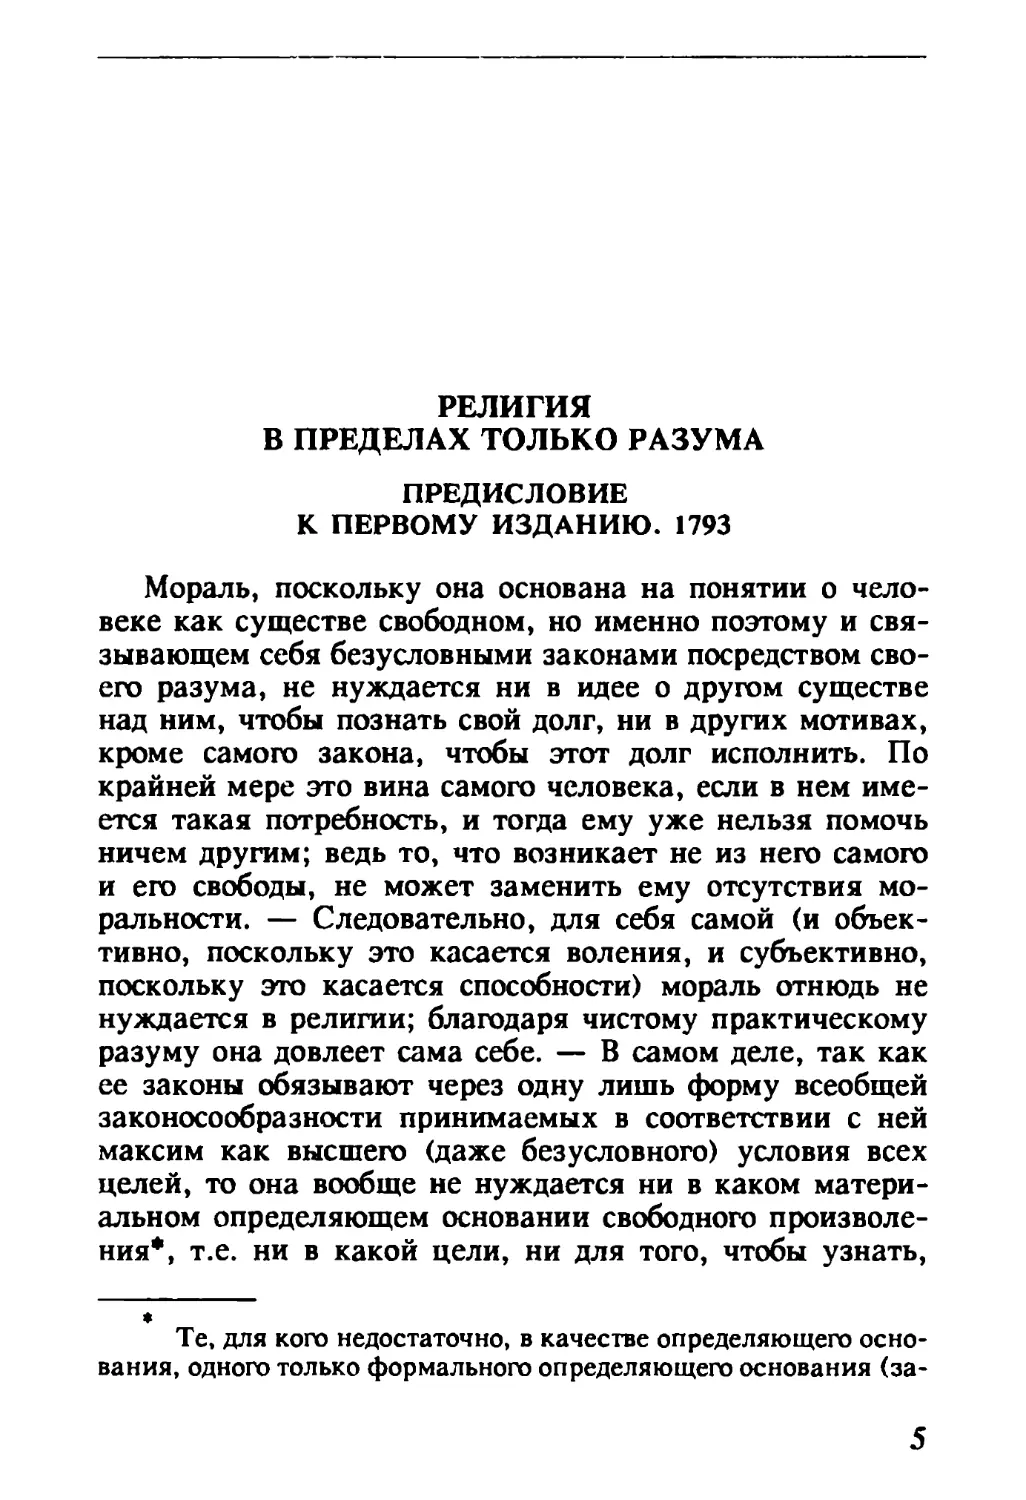 Предисловие к первому изданию. 1793